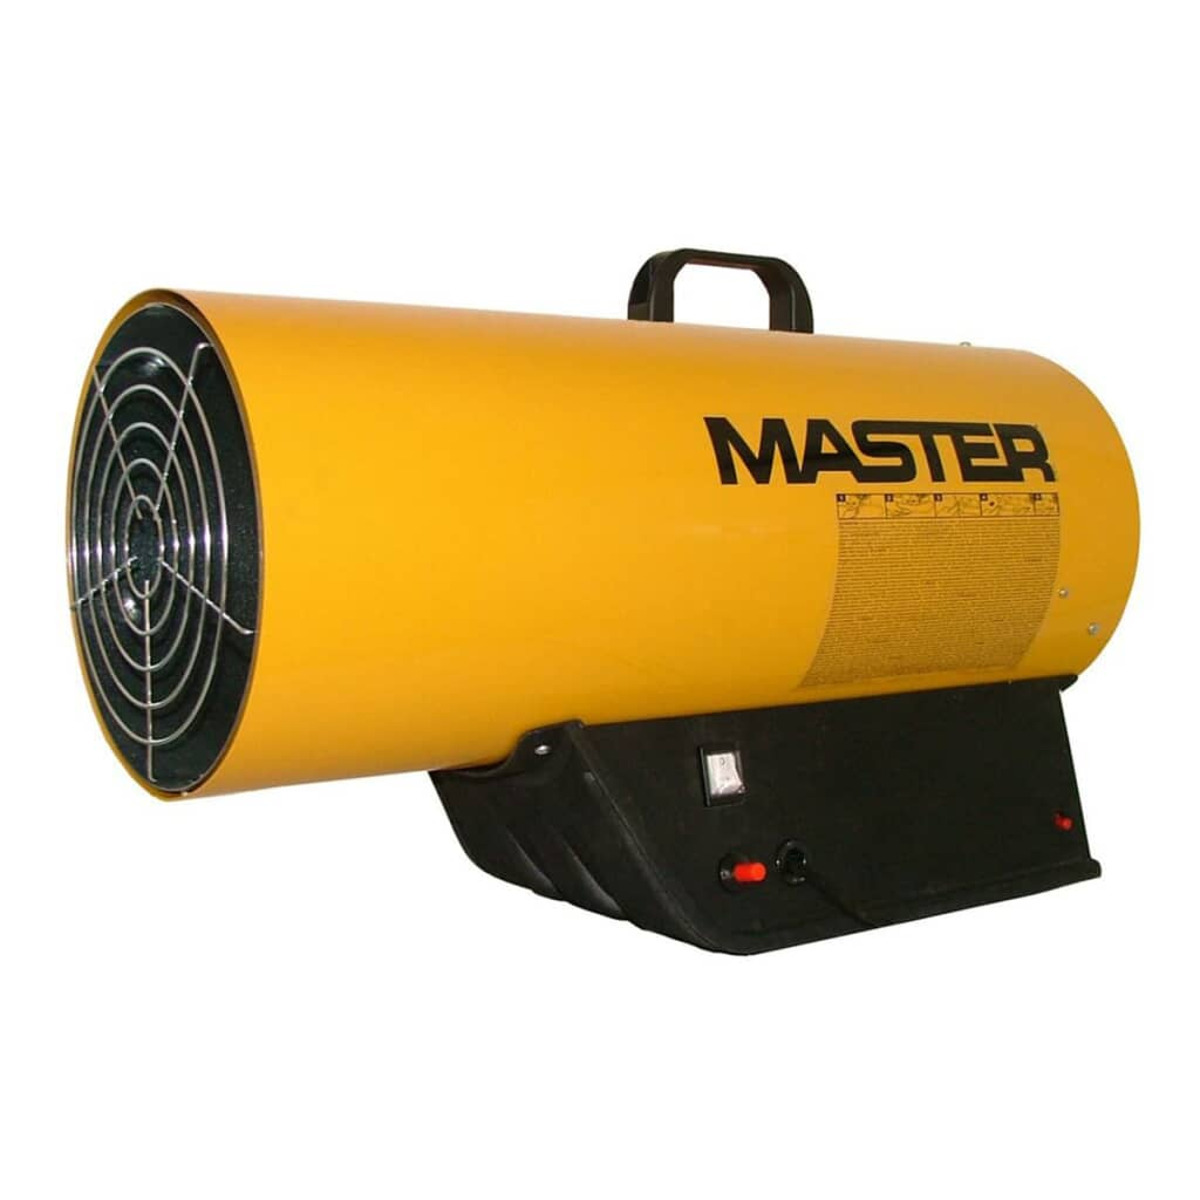 MASTER 403320 Watt) Heizstrahler (53000